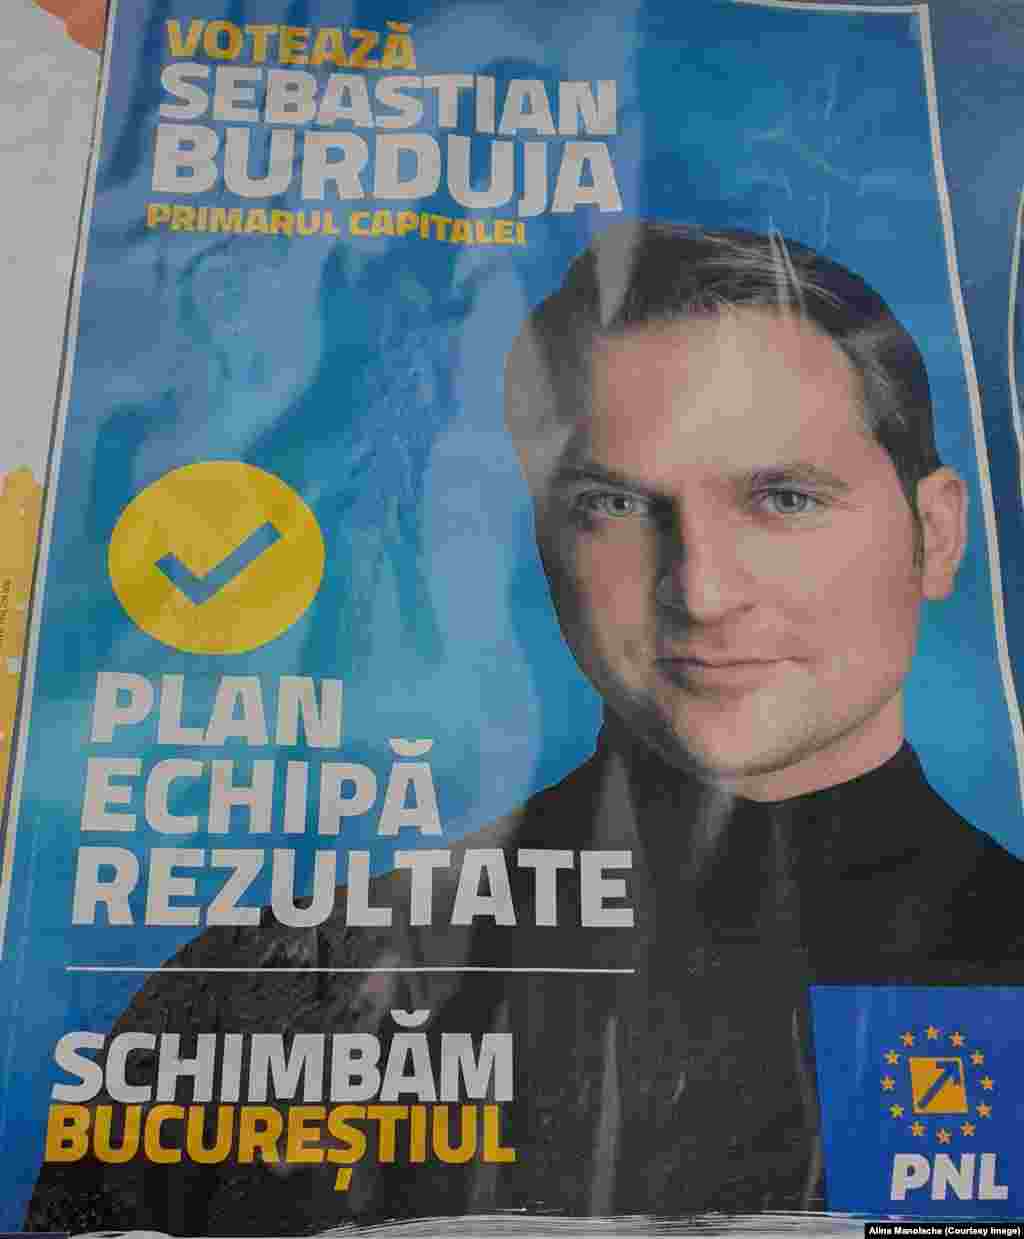 Sebastian Burduja, candidat PNL la Primăria Capitalei, susține că are &bdquo;plan, echipă, rezultate&rdquo; și că schimbă Bucureștiul.&nbsp;